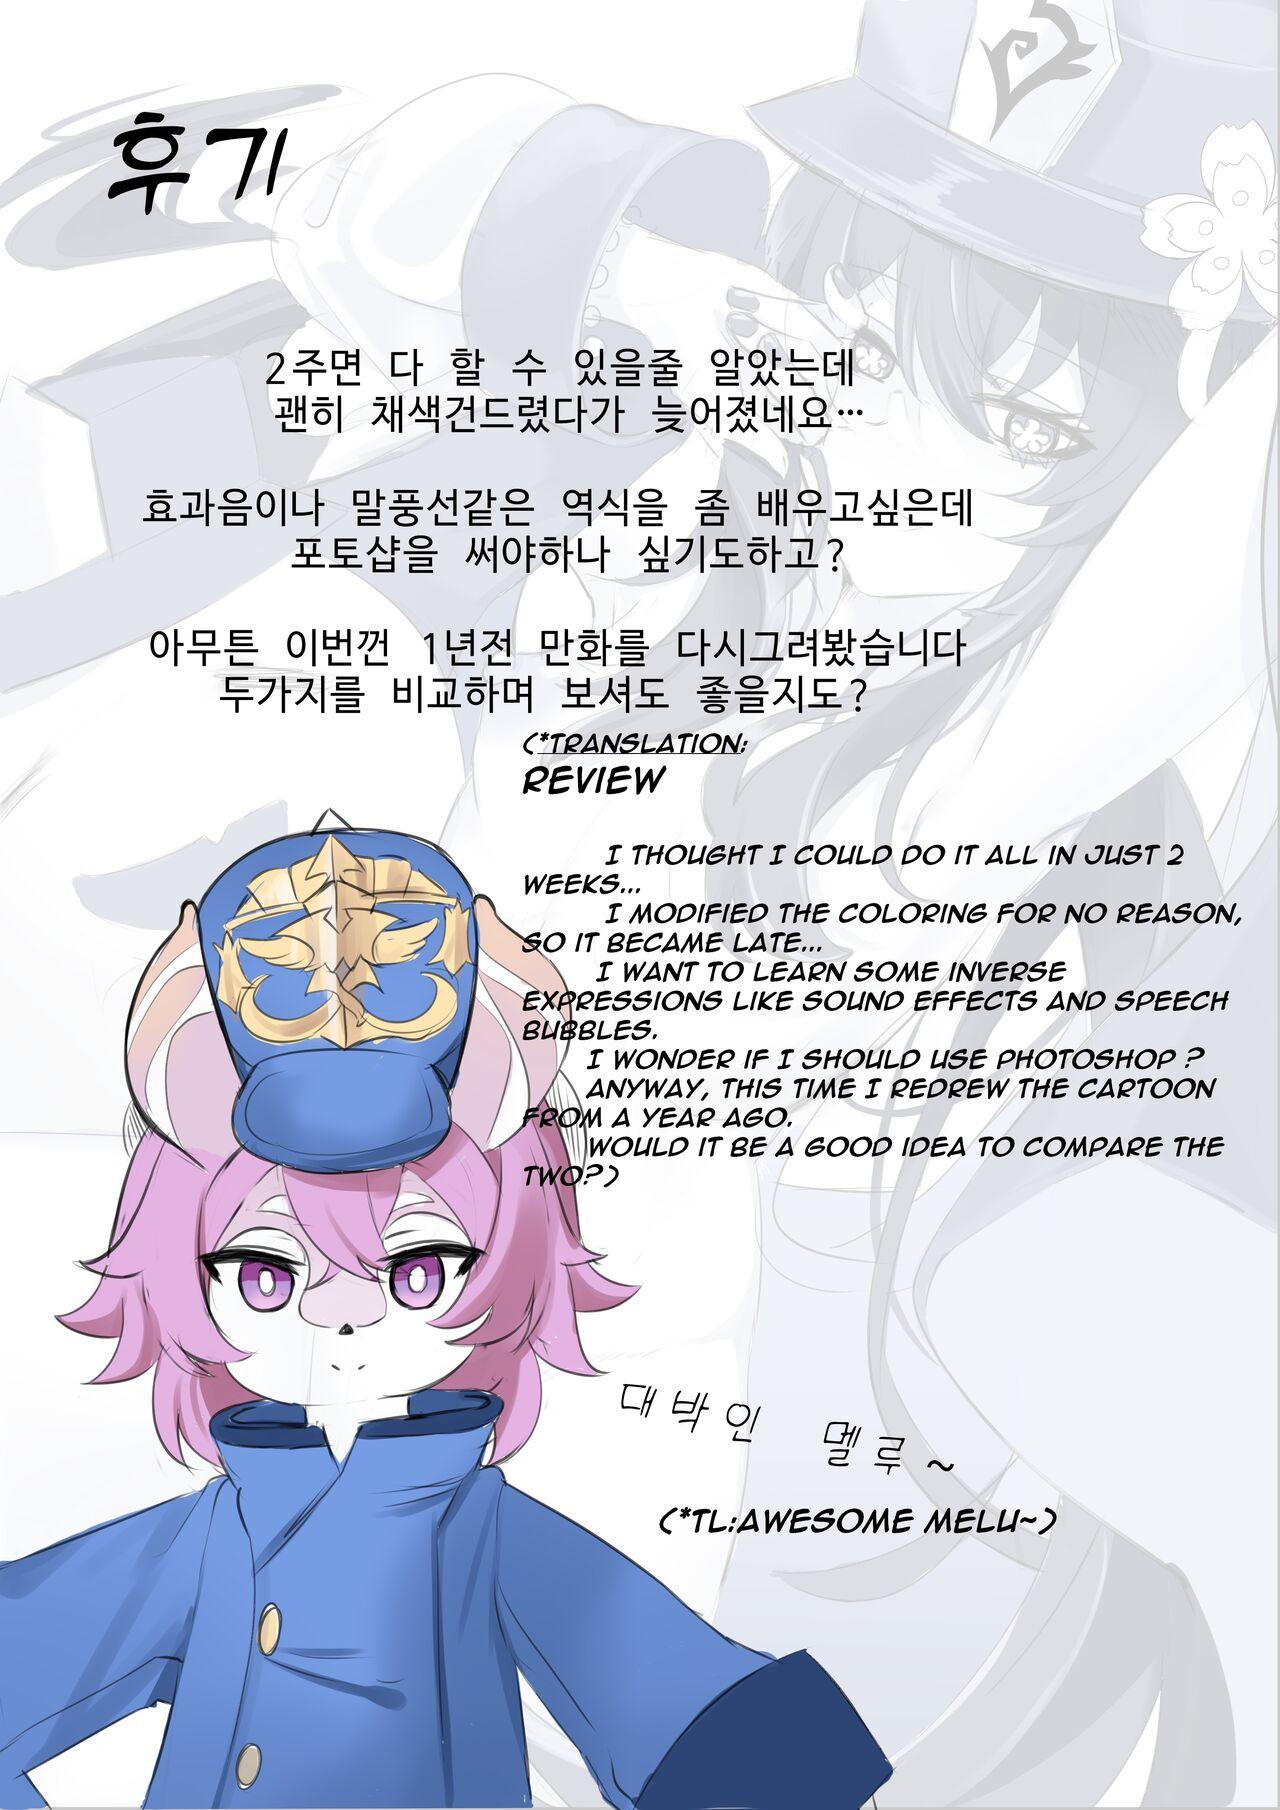 [bubo] Contract (remake) - A Hu Tao x Zhongli Hentai Comic (Genshin Impact) [ZTN translation] 32